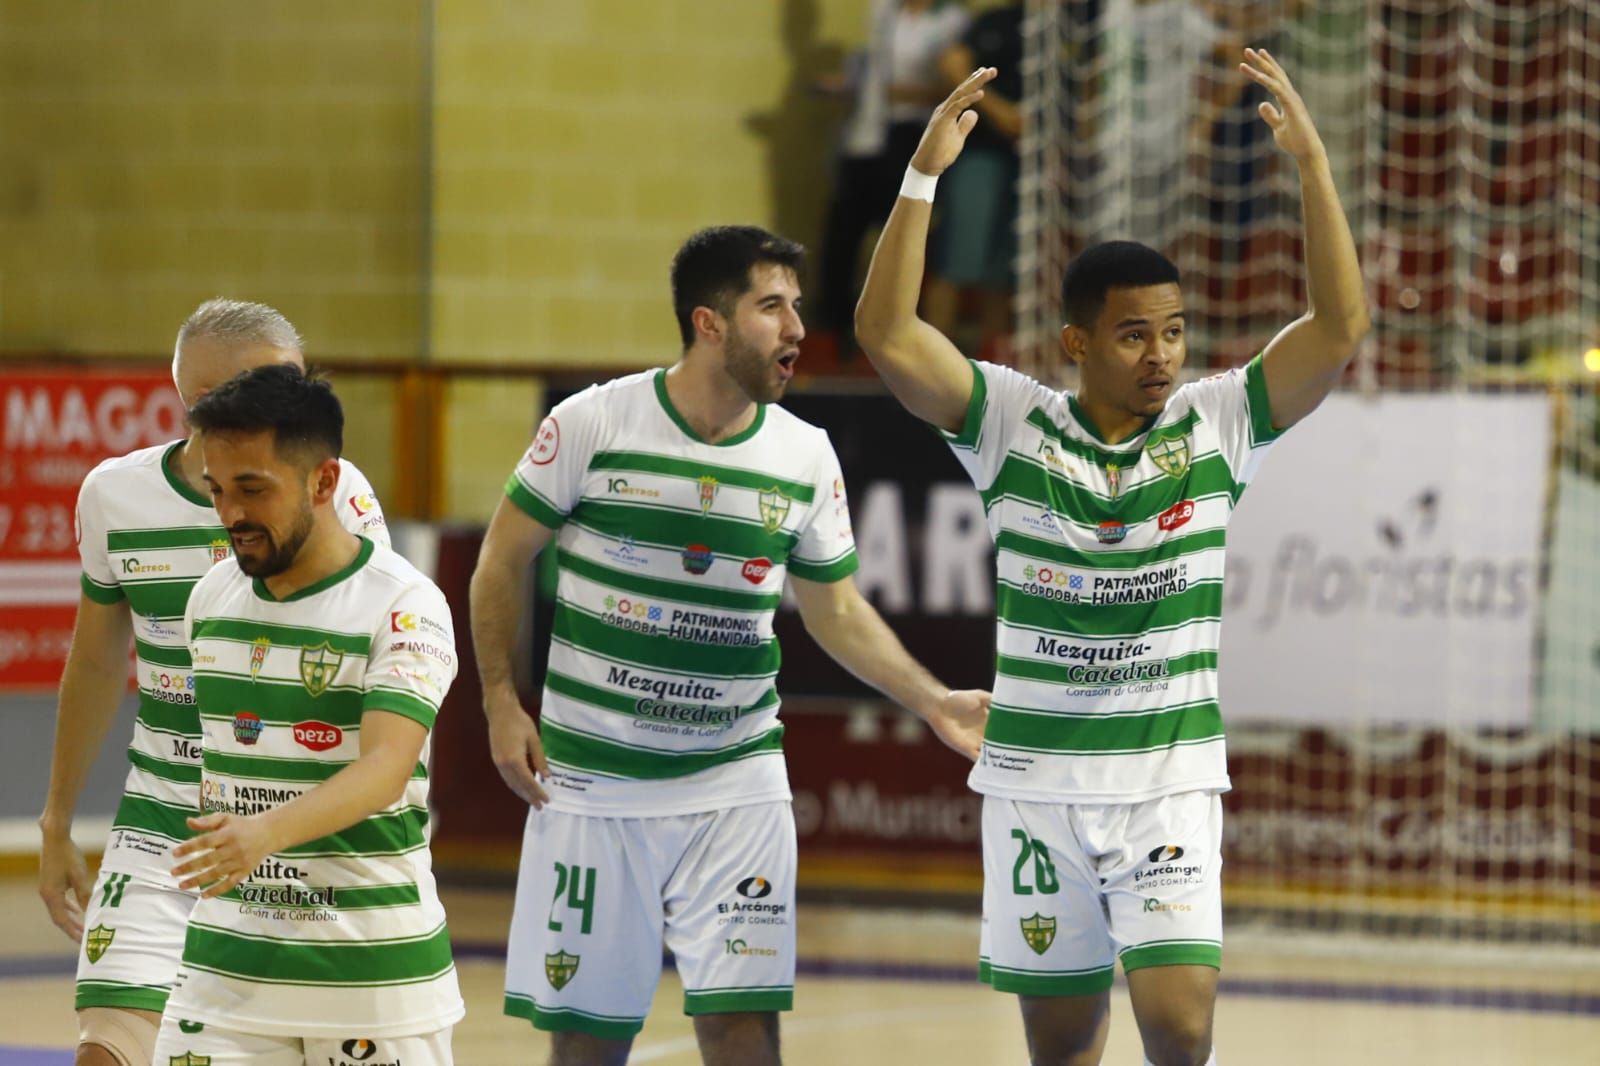 Córdoba Futsal Industrias-Santa Coloma, en imágenes